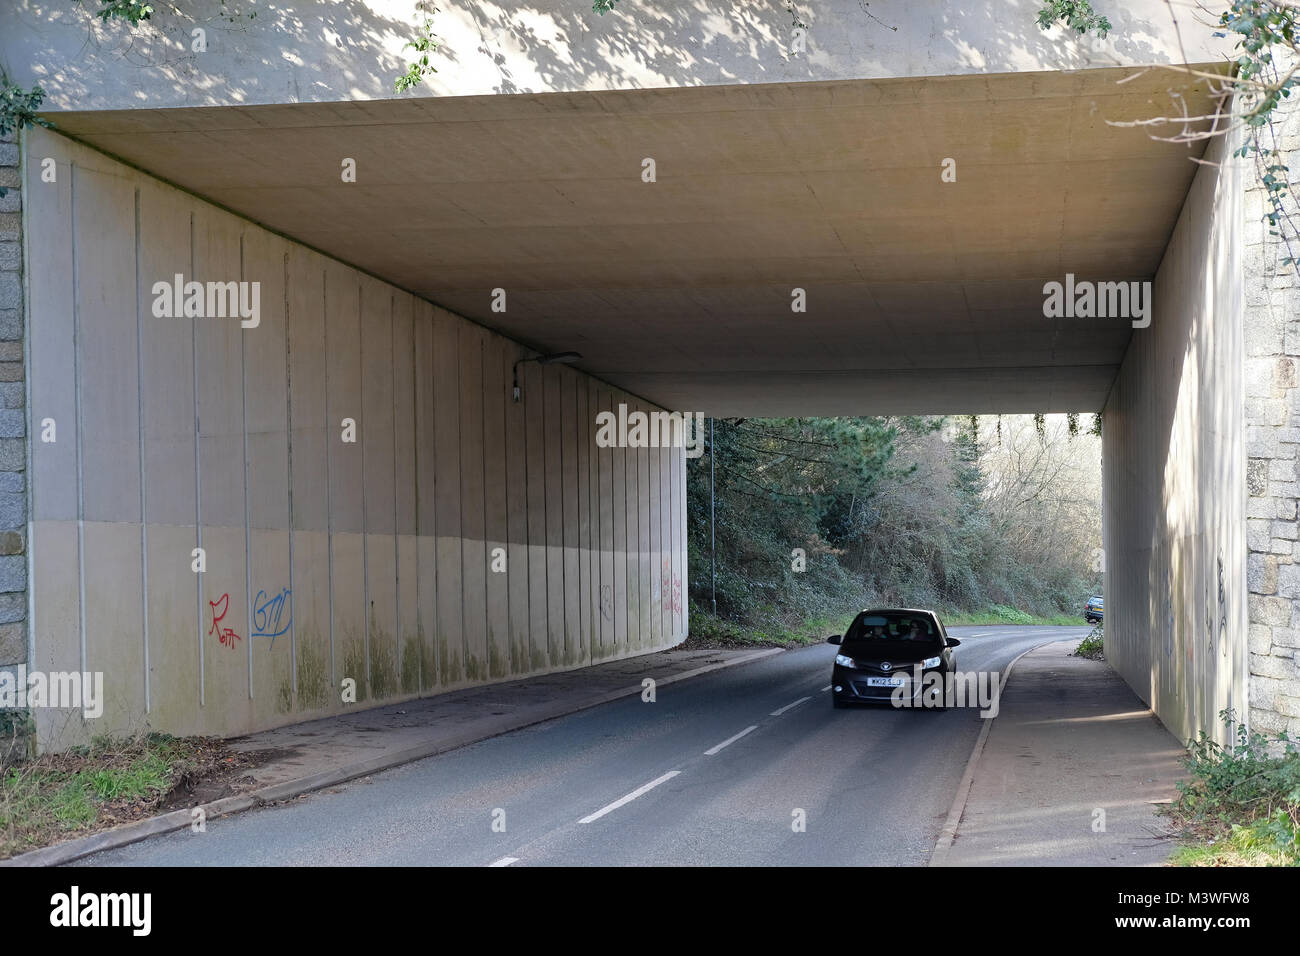 A car driving through an underpass Stock Photo